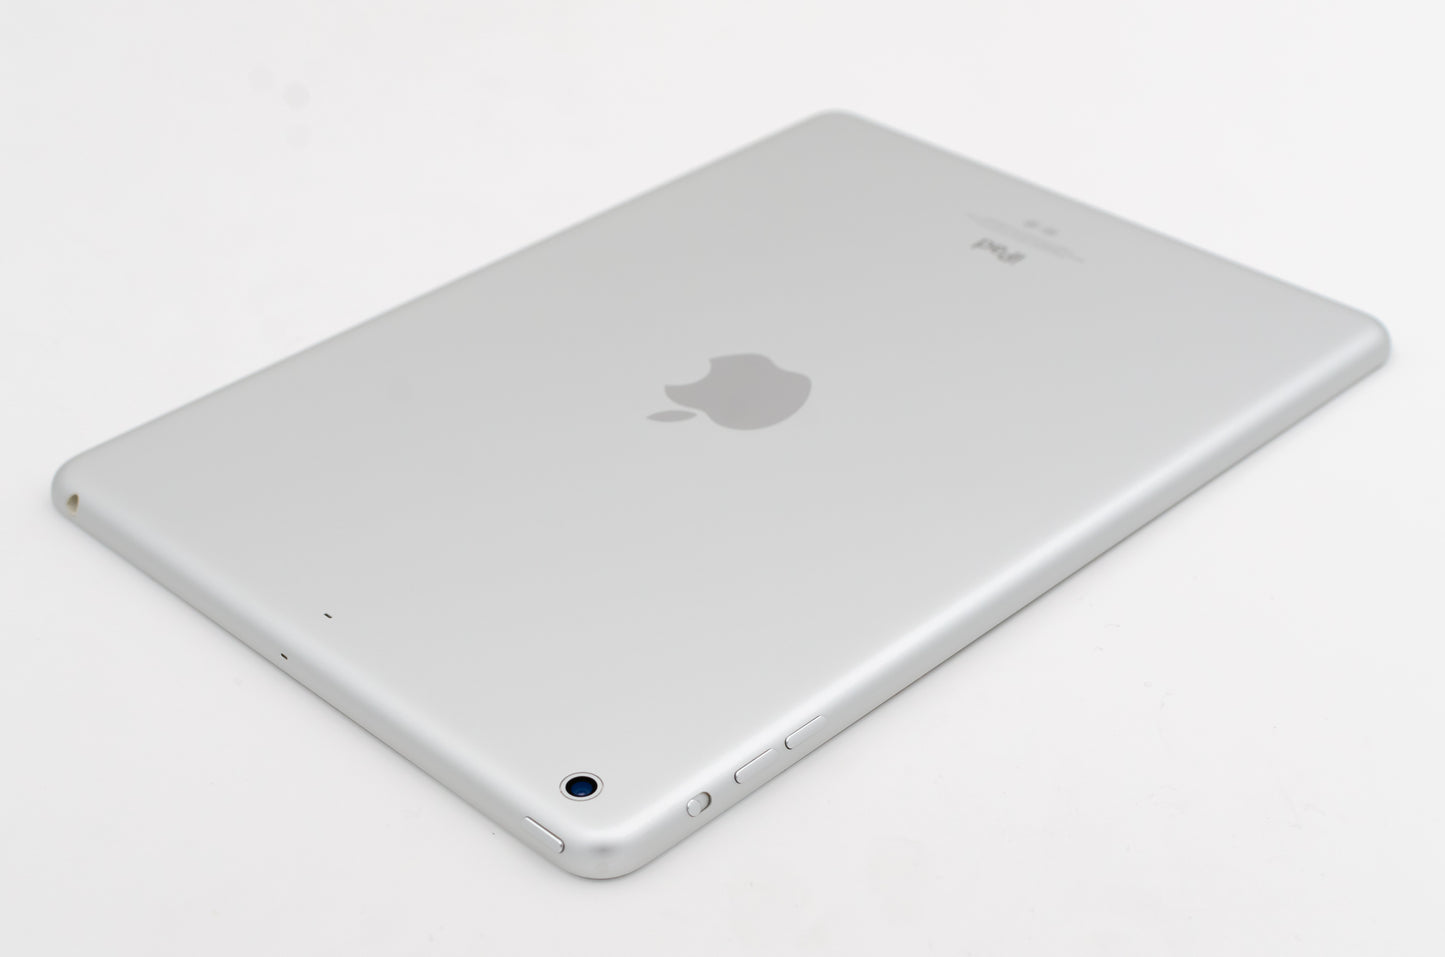 apple-2013-9.7-inch-ipad-air-1-a1474-silver/white-3